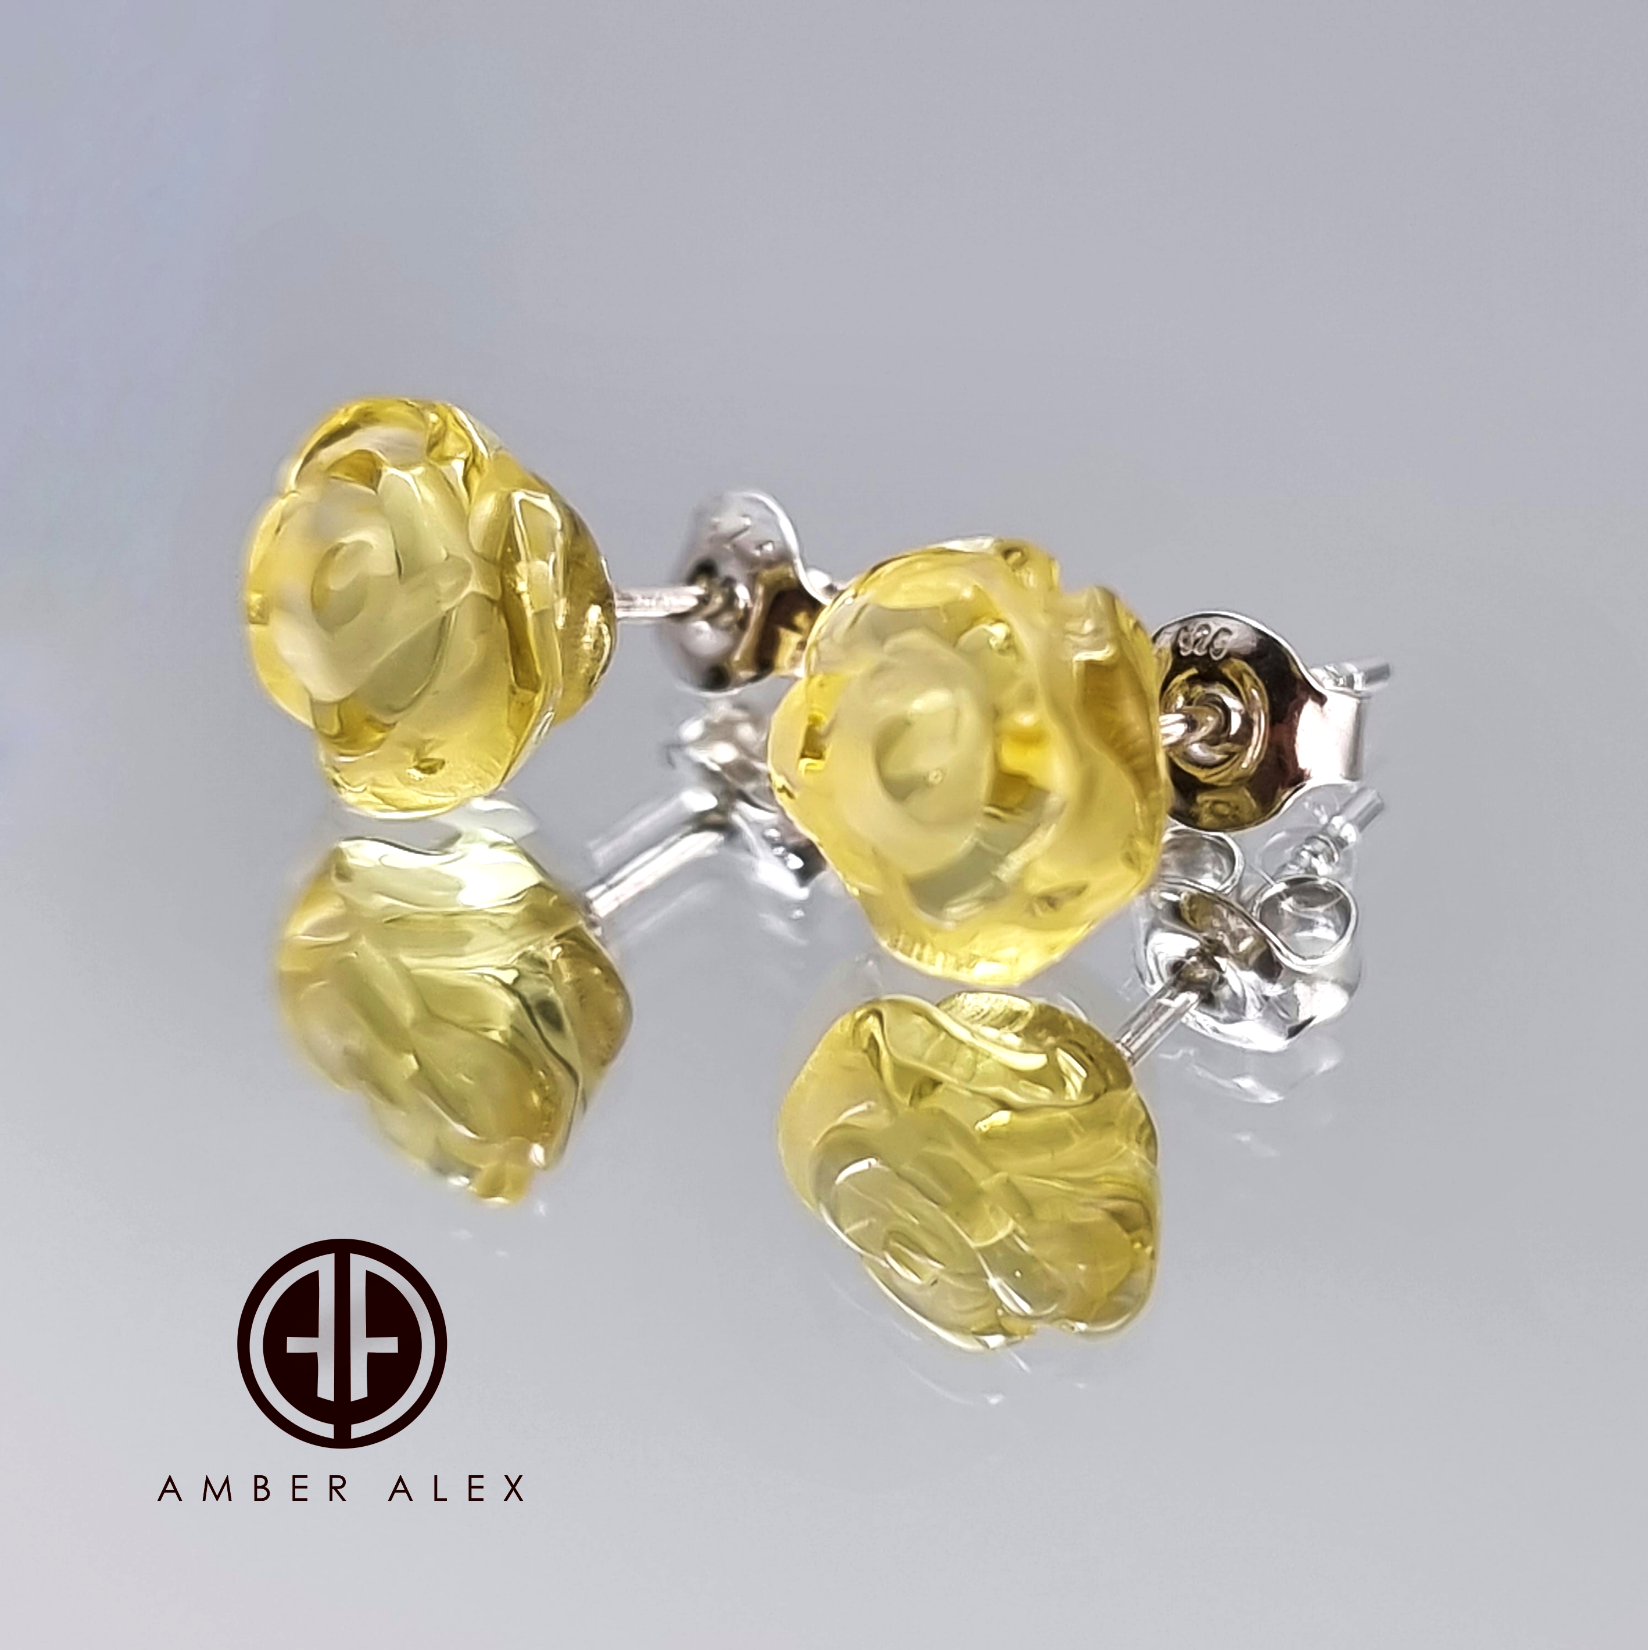 Lemon Amber Carved Rose Stud Earrings Sterling Silver